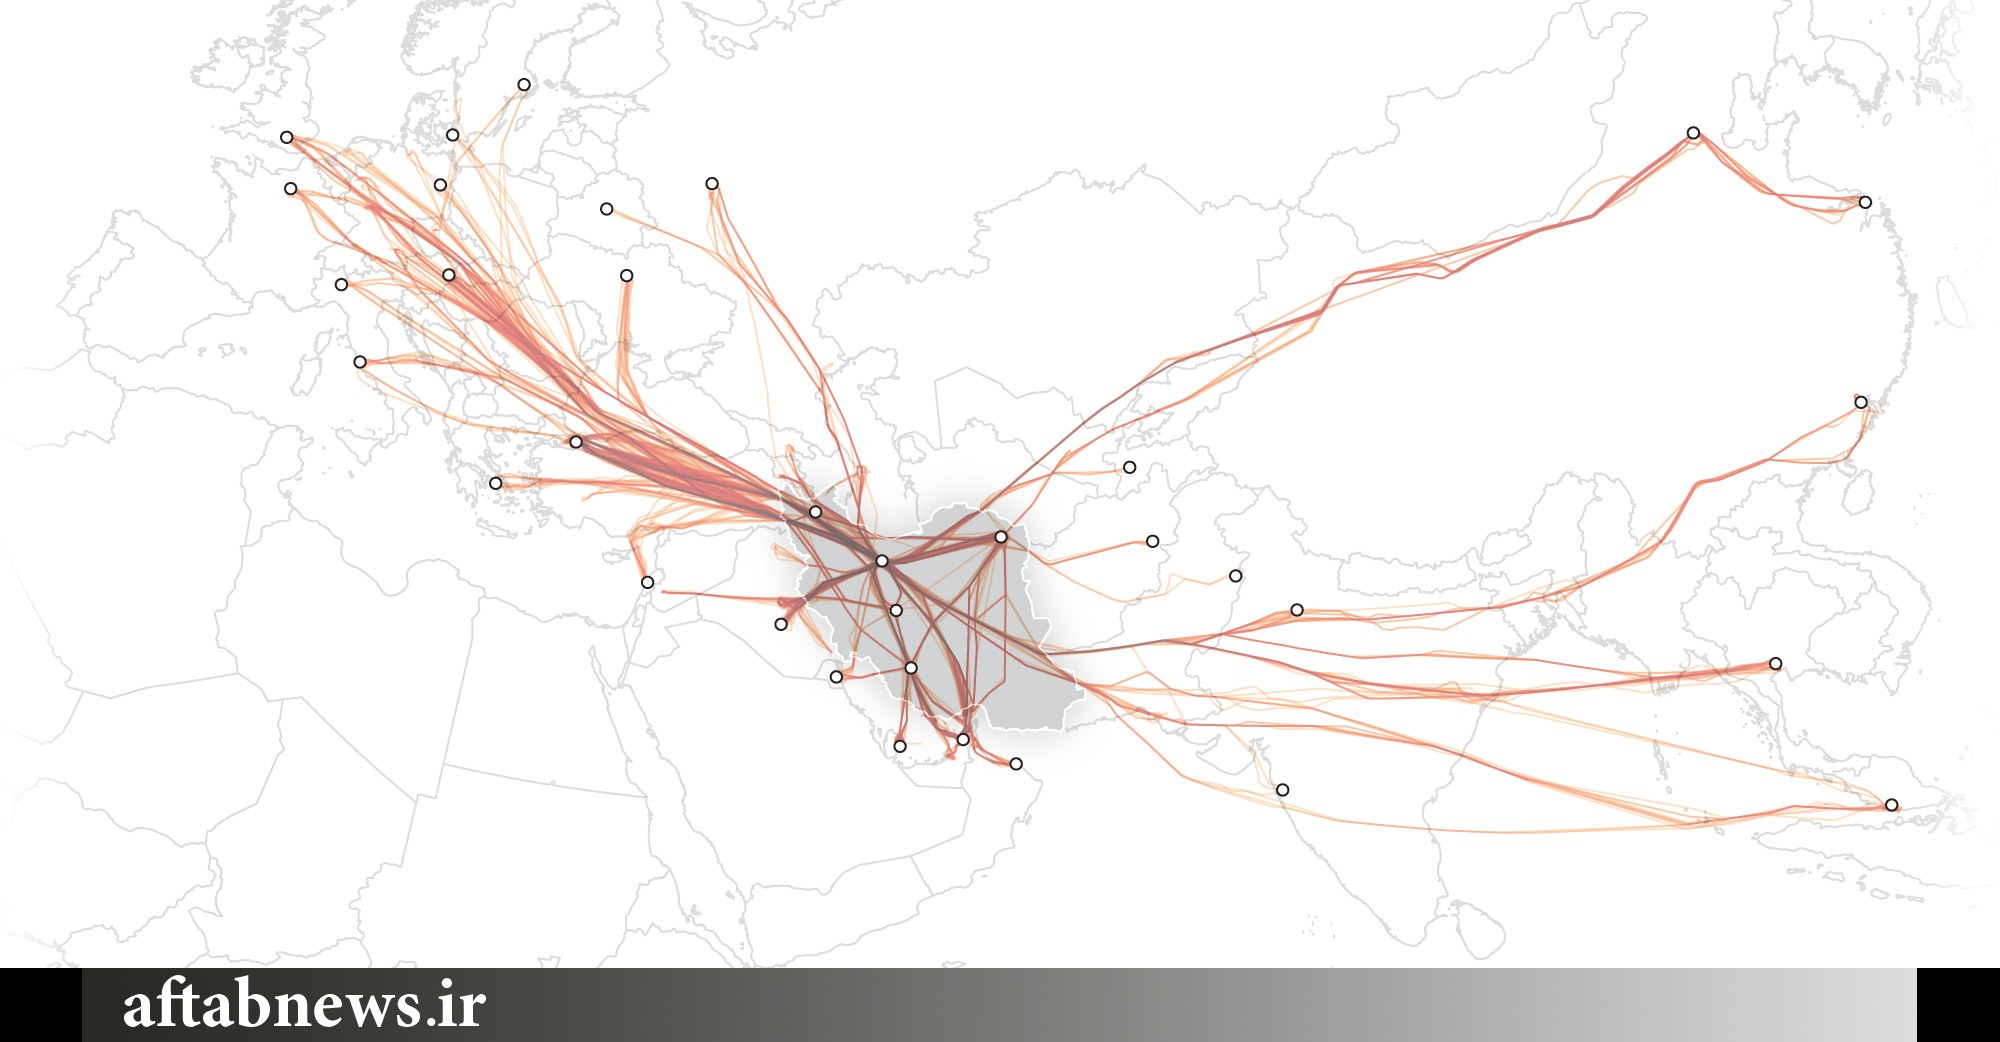 ترافیک هوایی در آسمان‌های ایران/افزایش پروازها به مقصد شهرهای ایران پس از برجام+نقشه